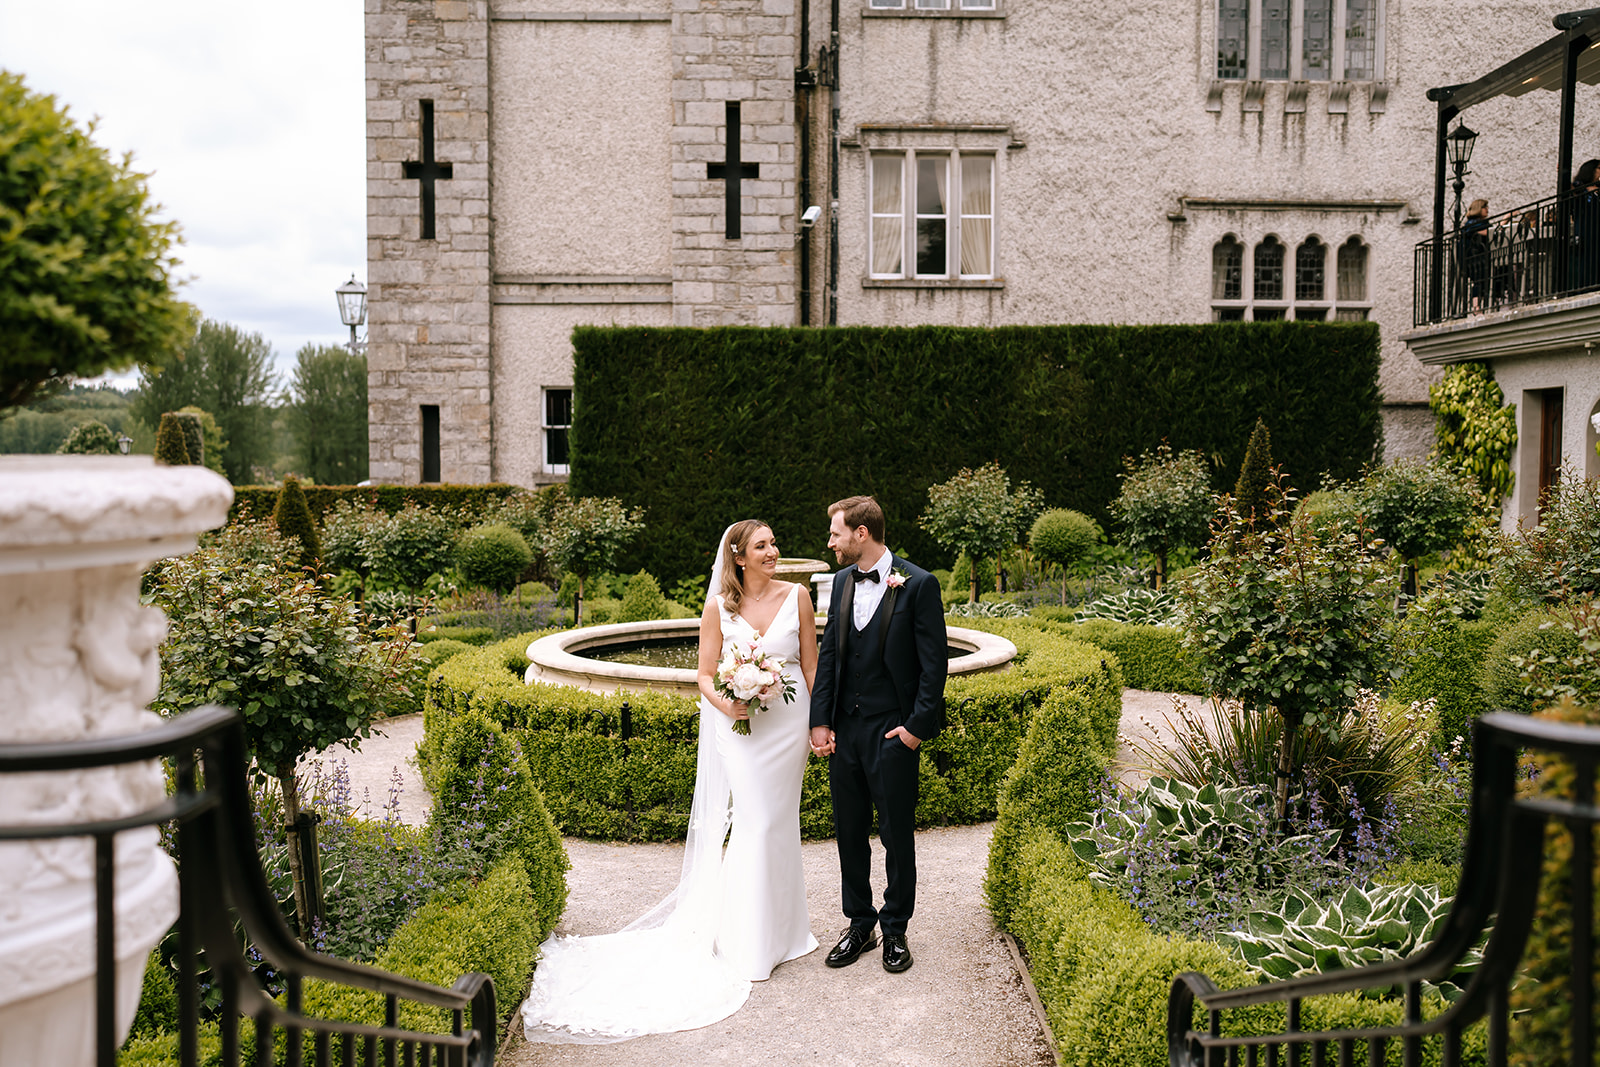 Dreamy Ireland Wedding at Cabra Castle